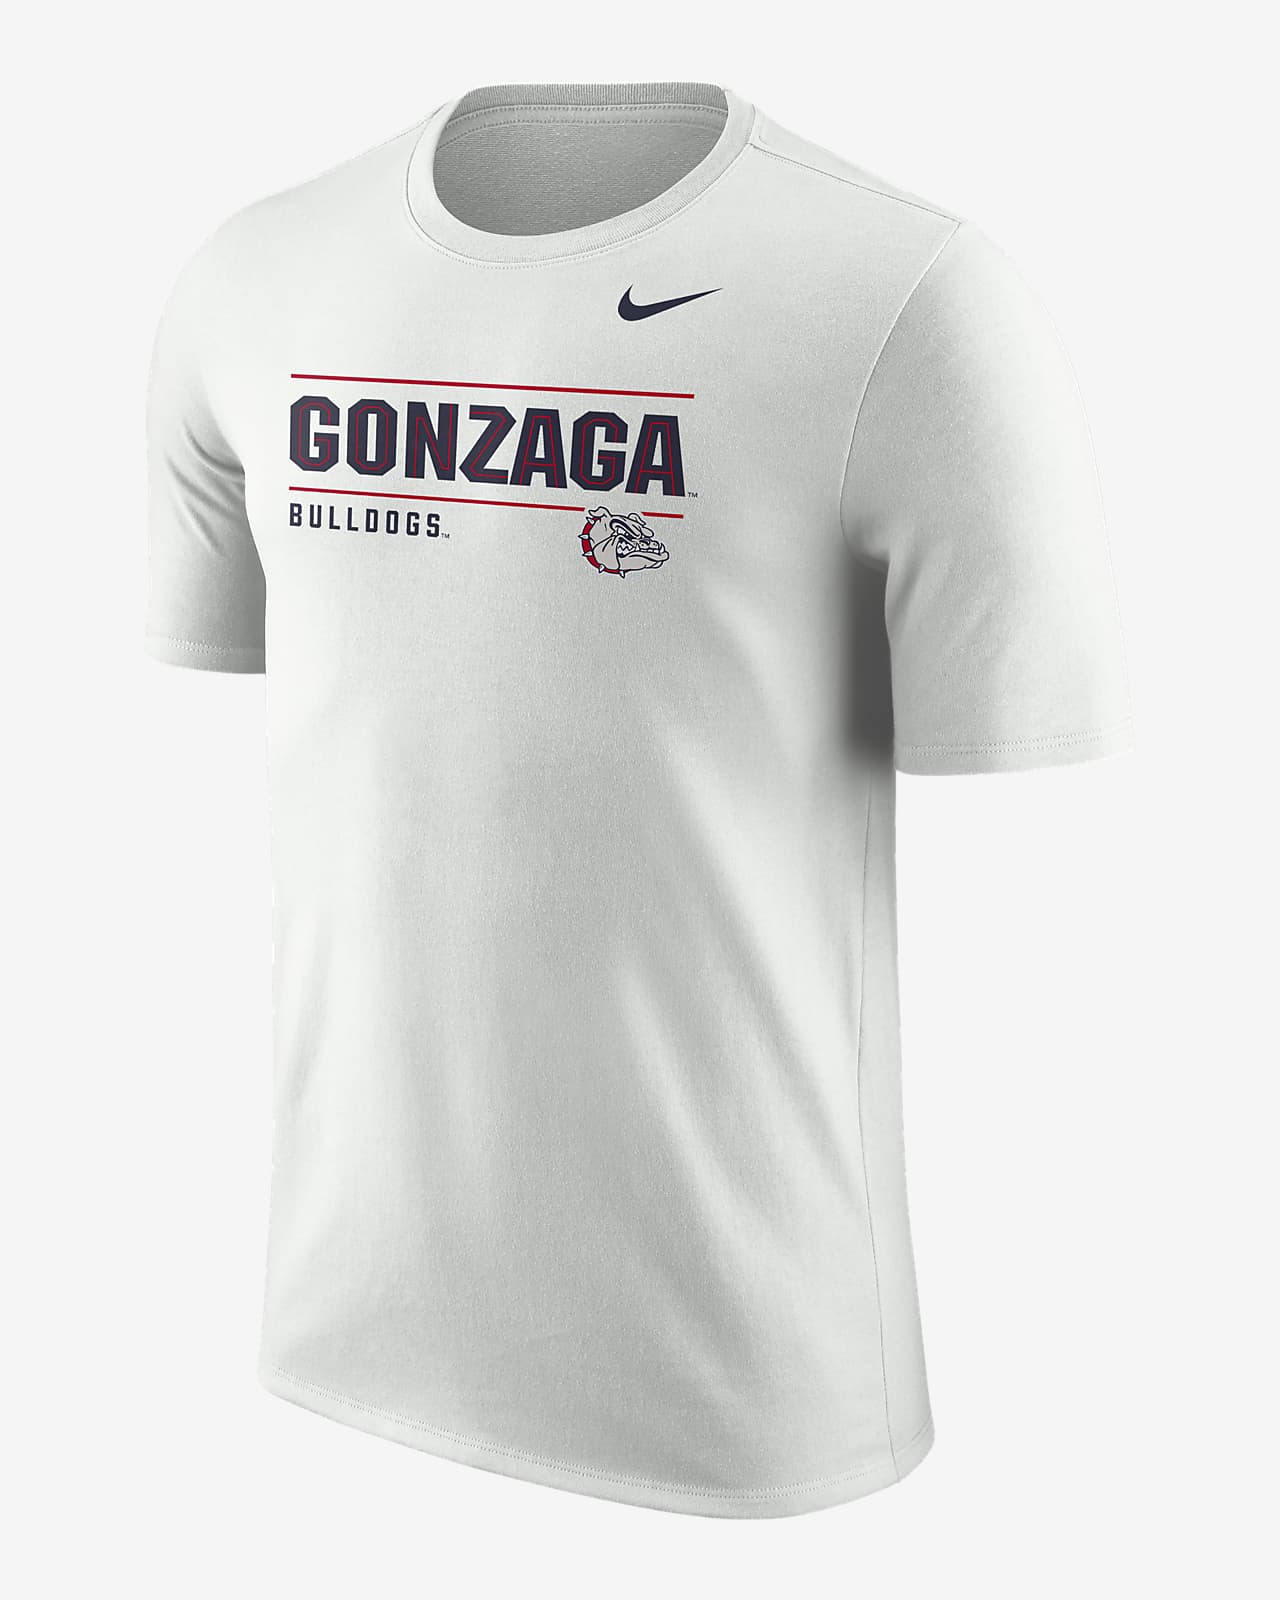 Nike, Shirts, Gonzaga Basketball Jersey